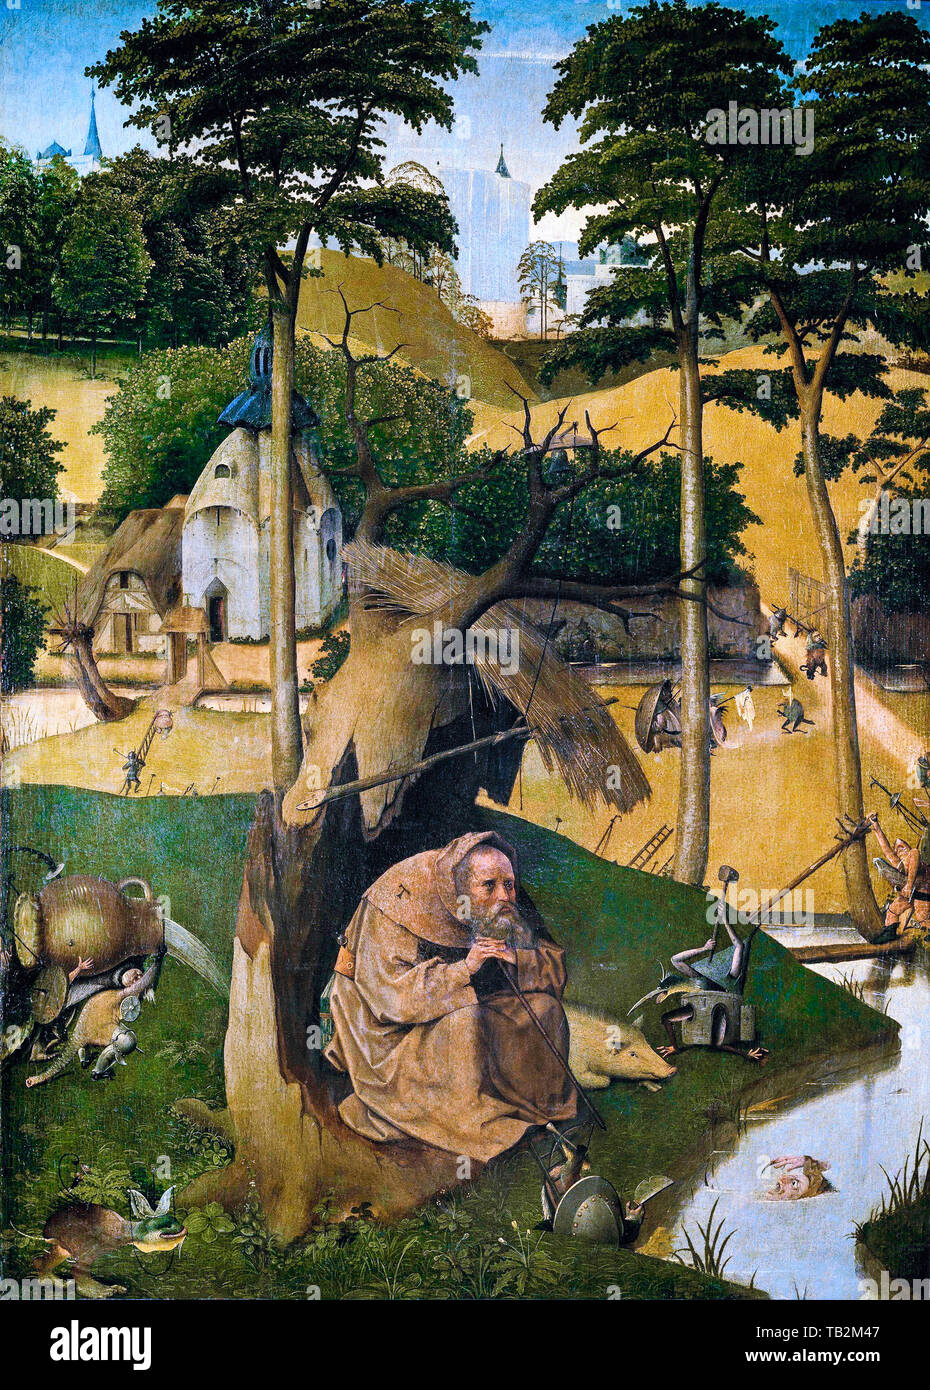 Jérôme Bosch, La Tentation de Saint Antoine (Madrid), peinture, vers 1500 Banque D'Images